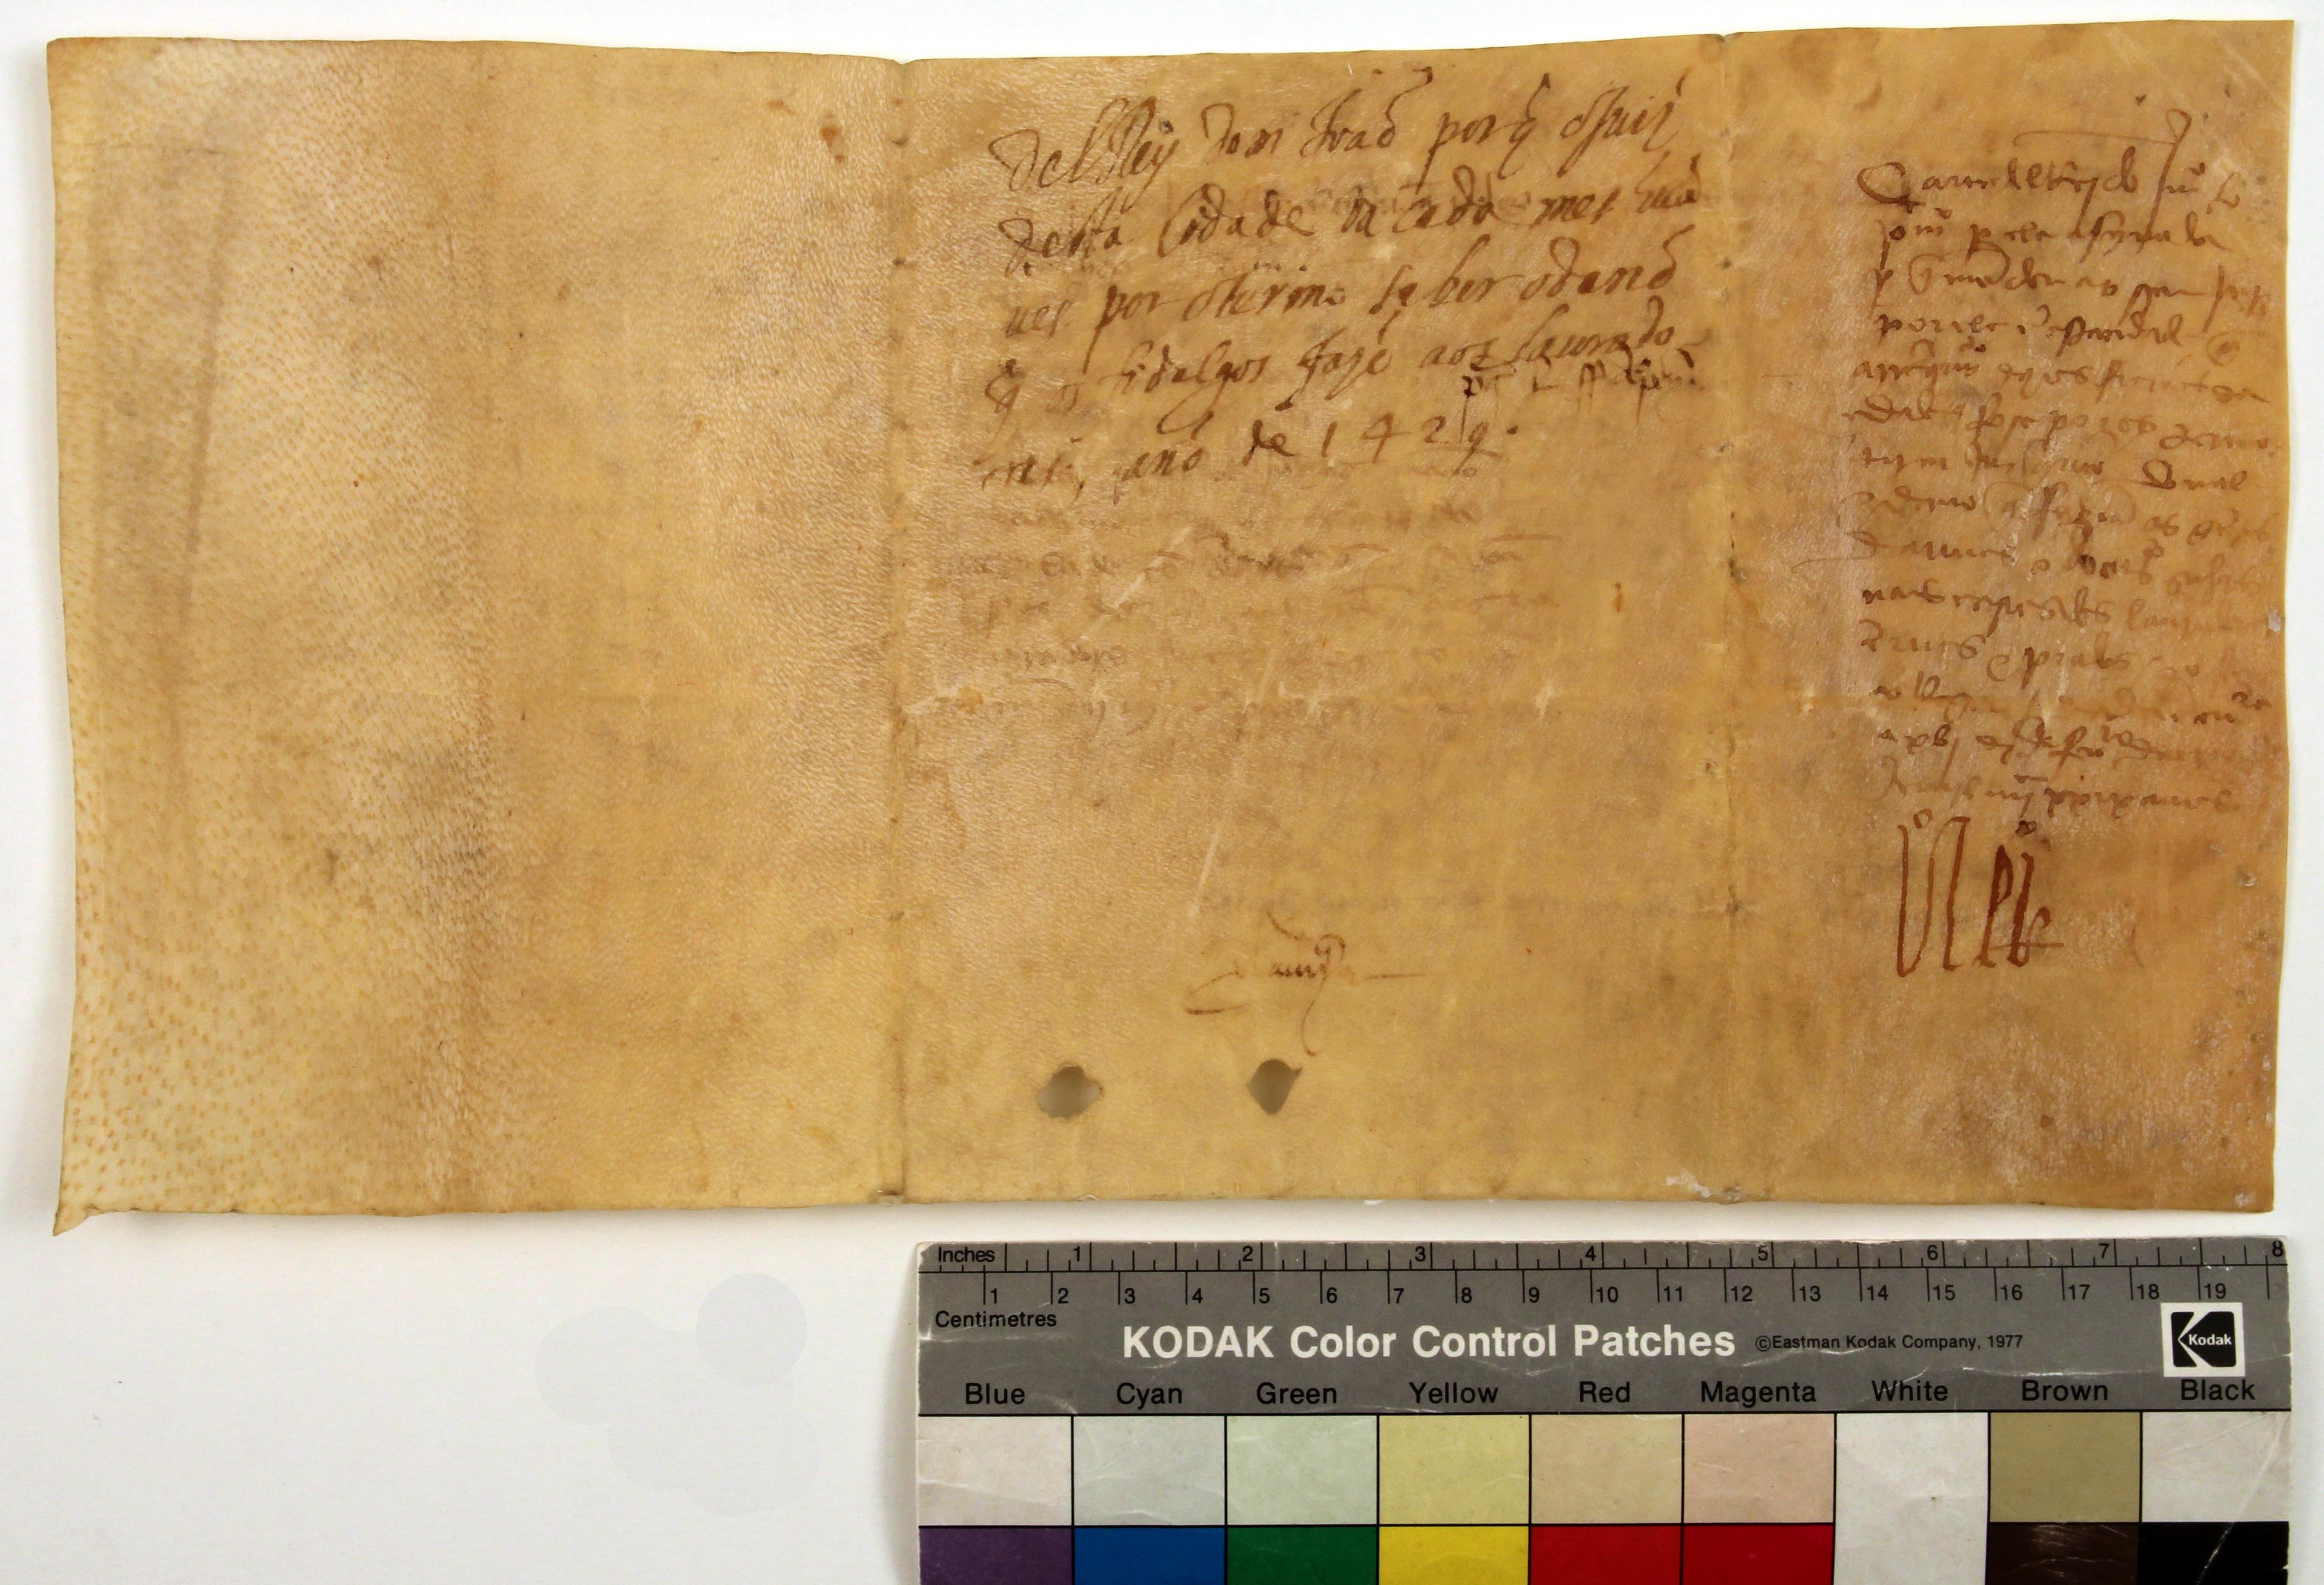 [Carta de mercê de D. João I a João de Alpoim, juiz de fora, sobre a necessidade de realização de uma correição mensal no termo da cidade do Porto]